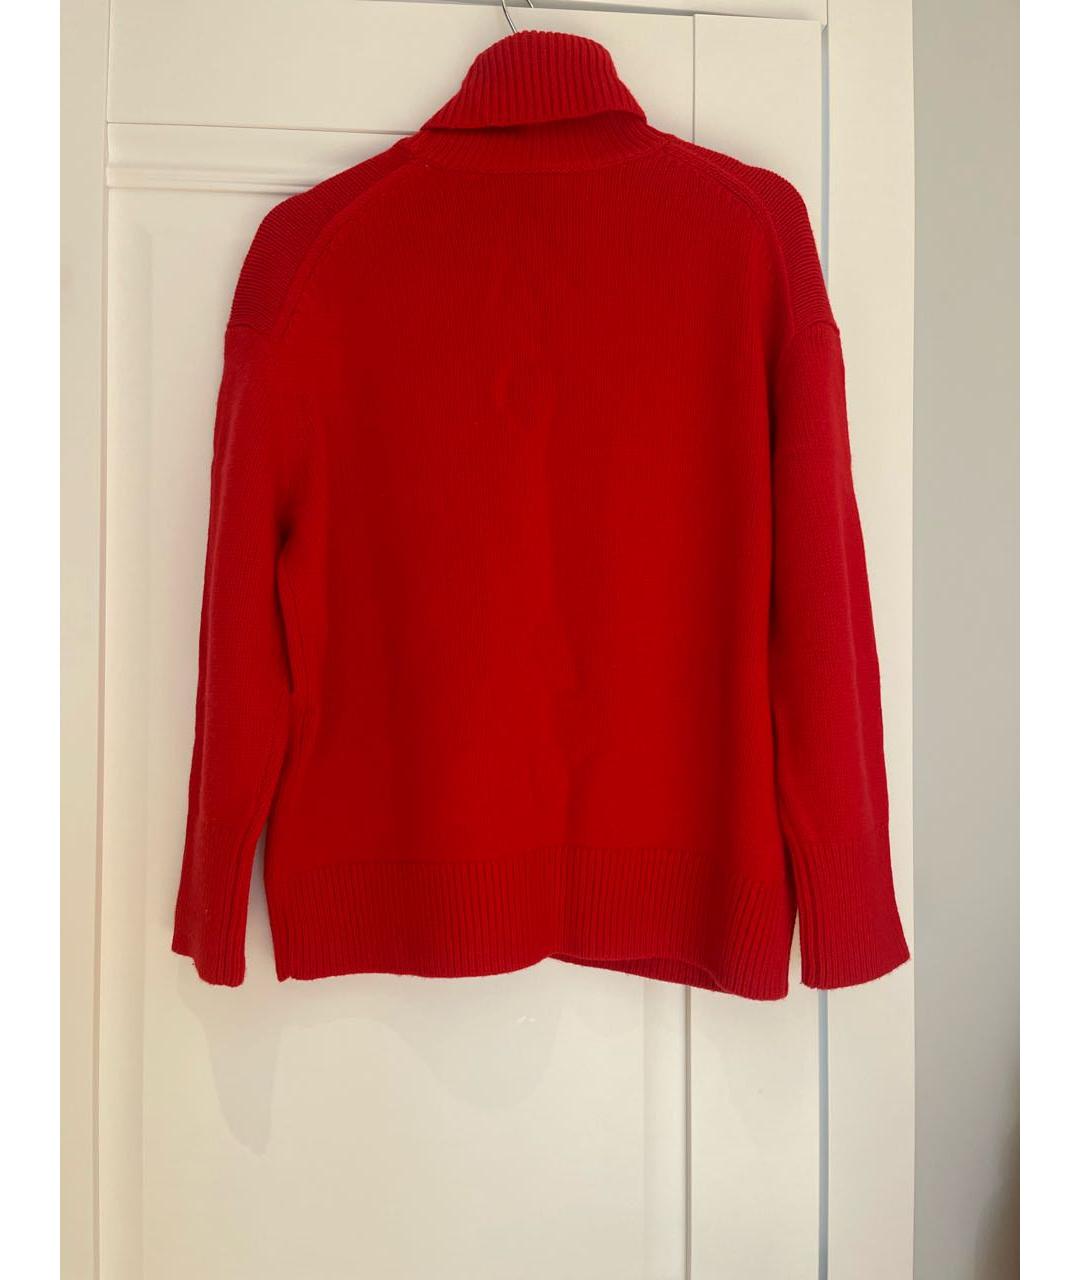 12 STOREEZ Красный шерстяной джемпер / свитер, фото 2